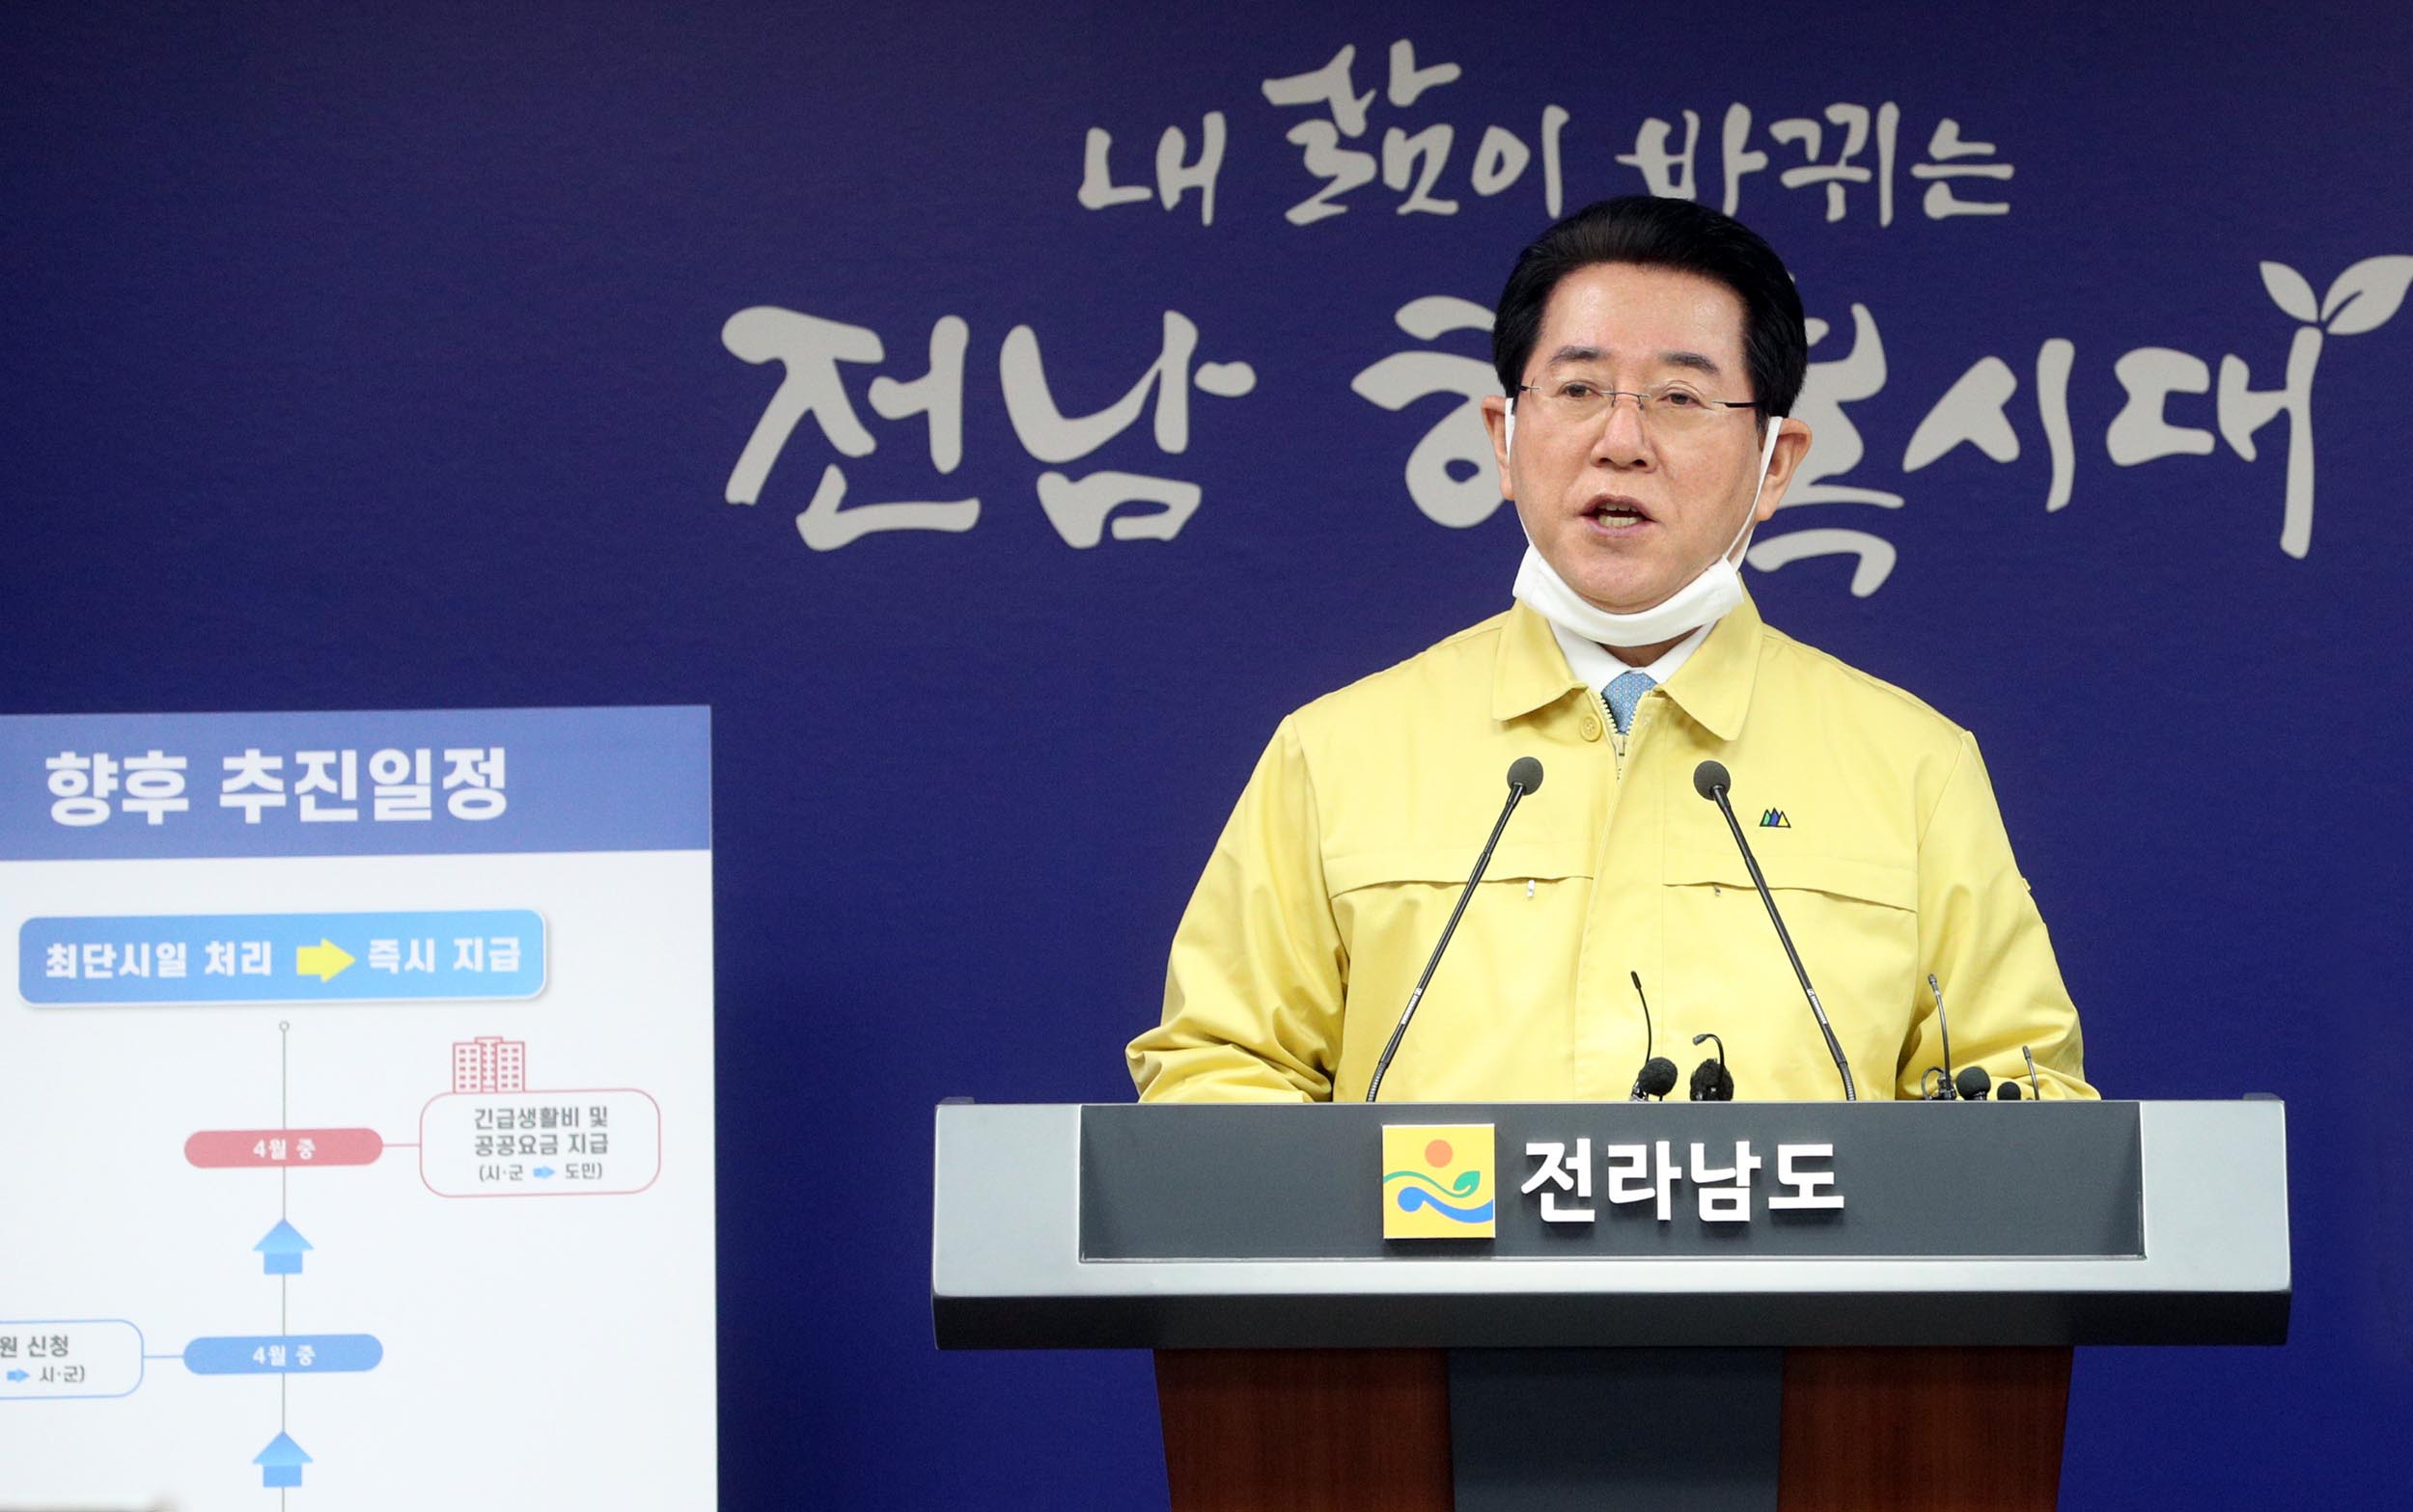 ‘코로나19’ 위기 극복 긴급 민생지원 안정종합대책 담화문 발표6